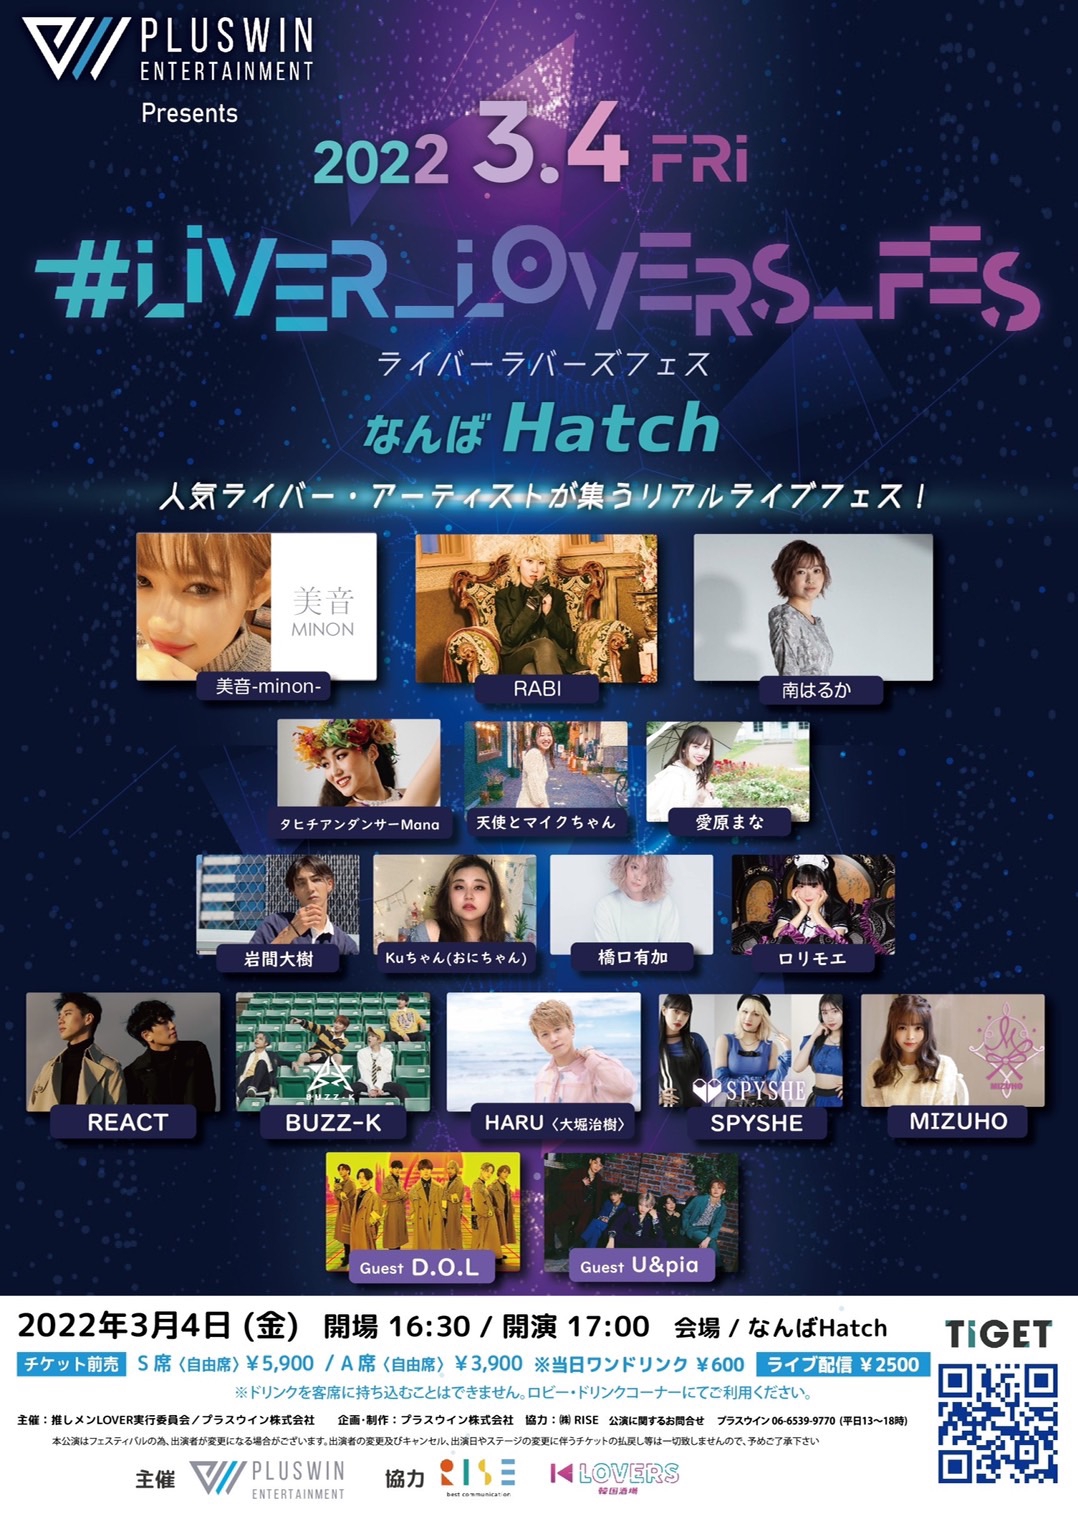 2022/3/4(金)なんばhatch「 #LIVER_LOVERS_FES 」出演決定！ | HARU